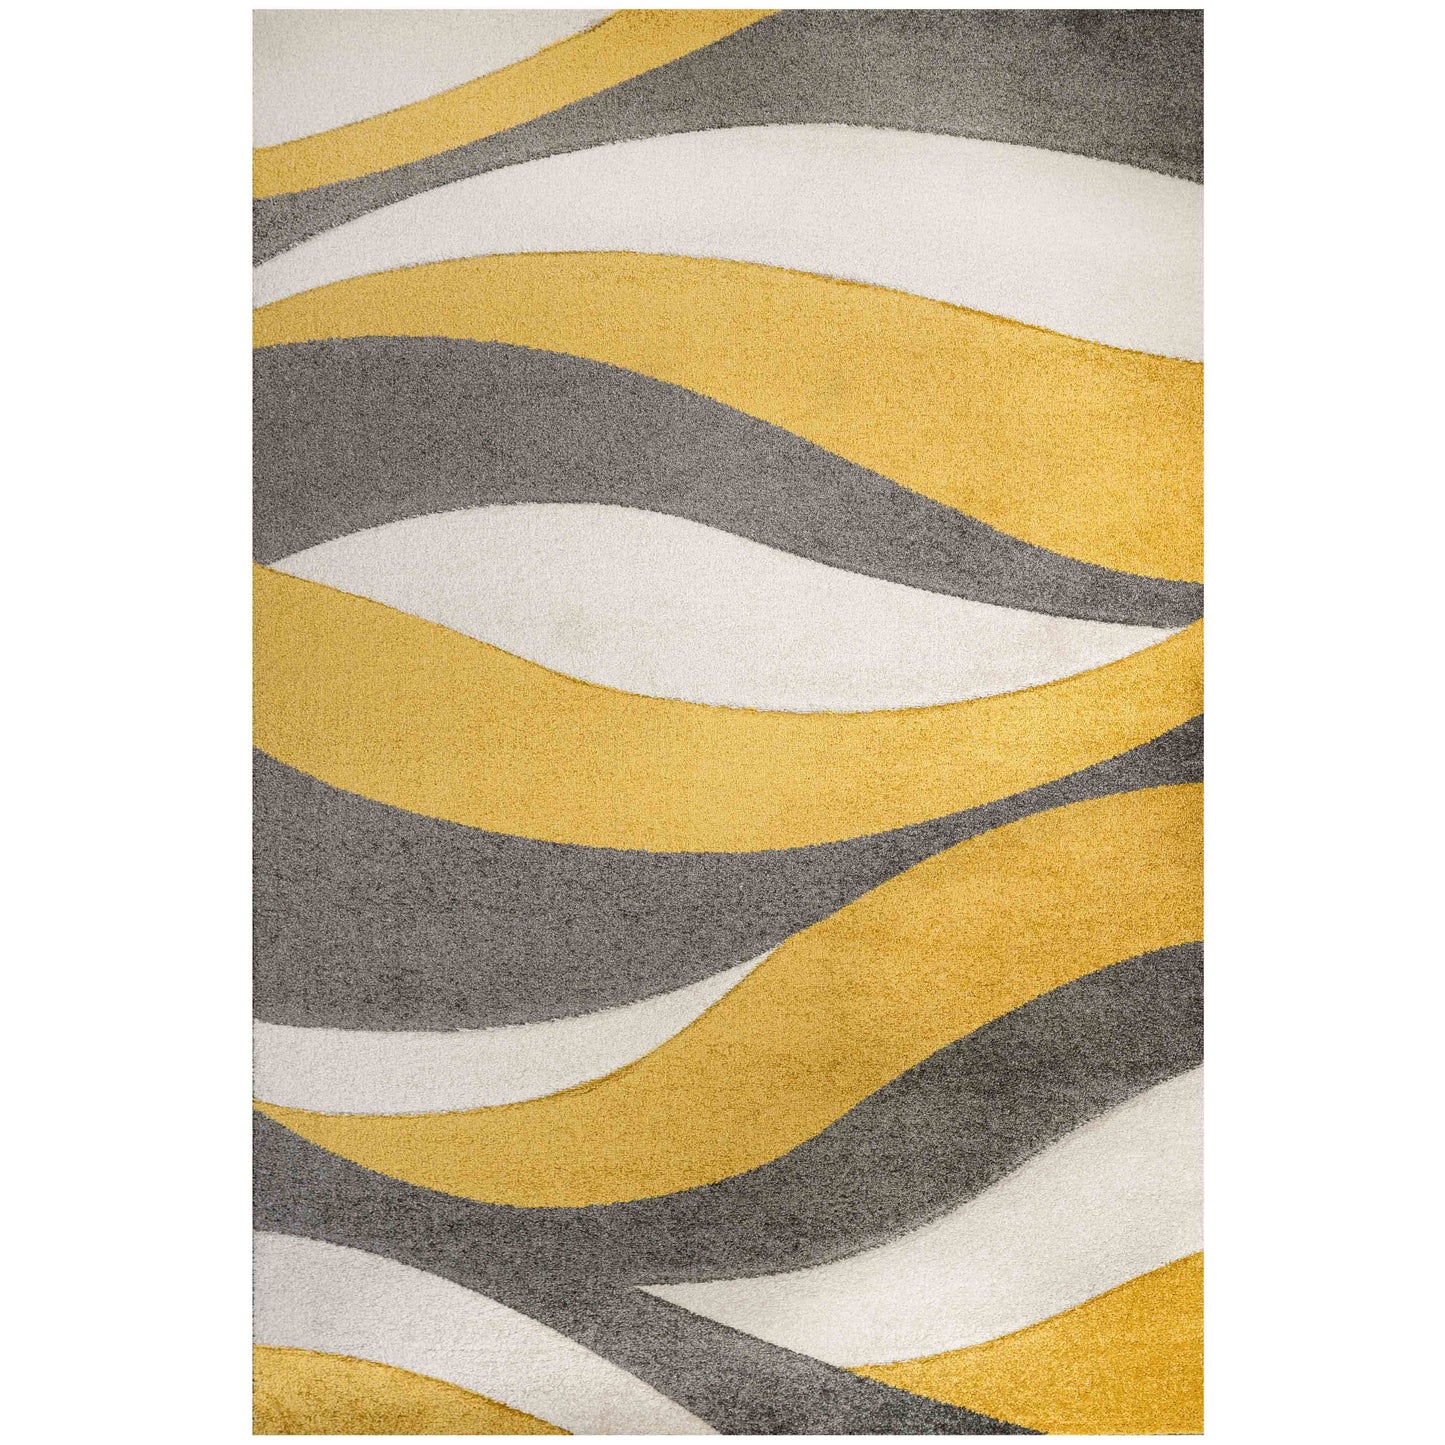 Soft Modern Wave Pattern Yellow Grey Rugs